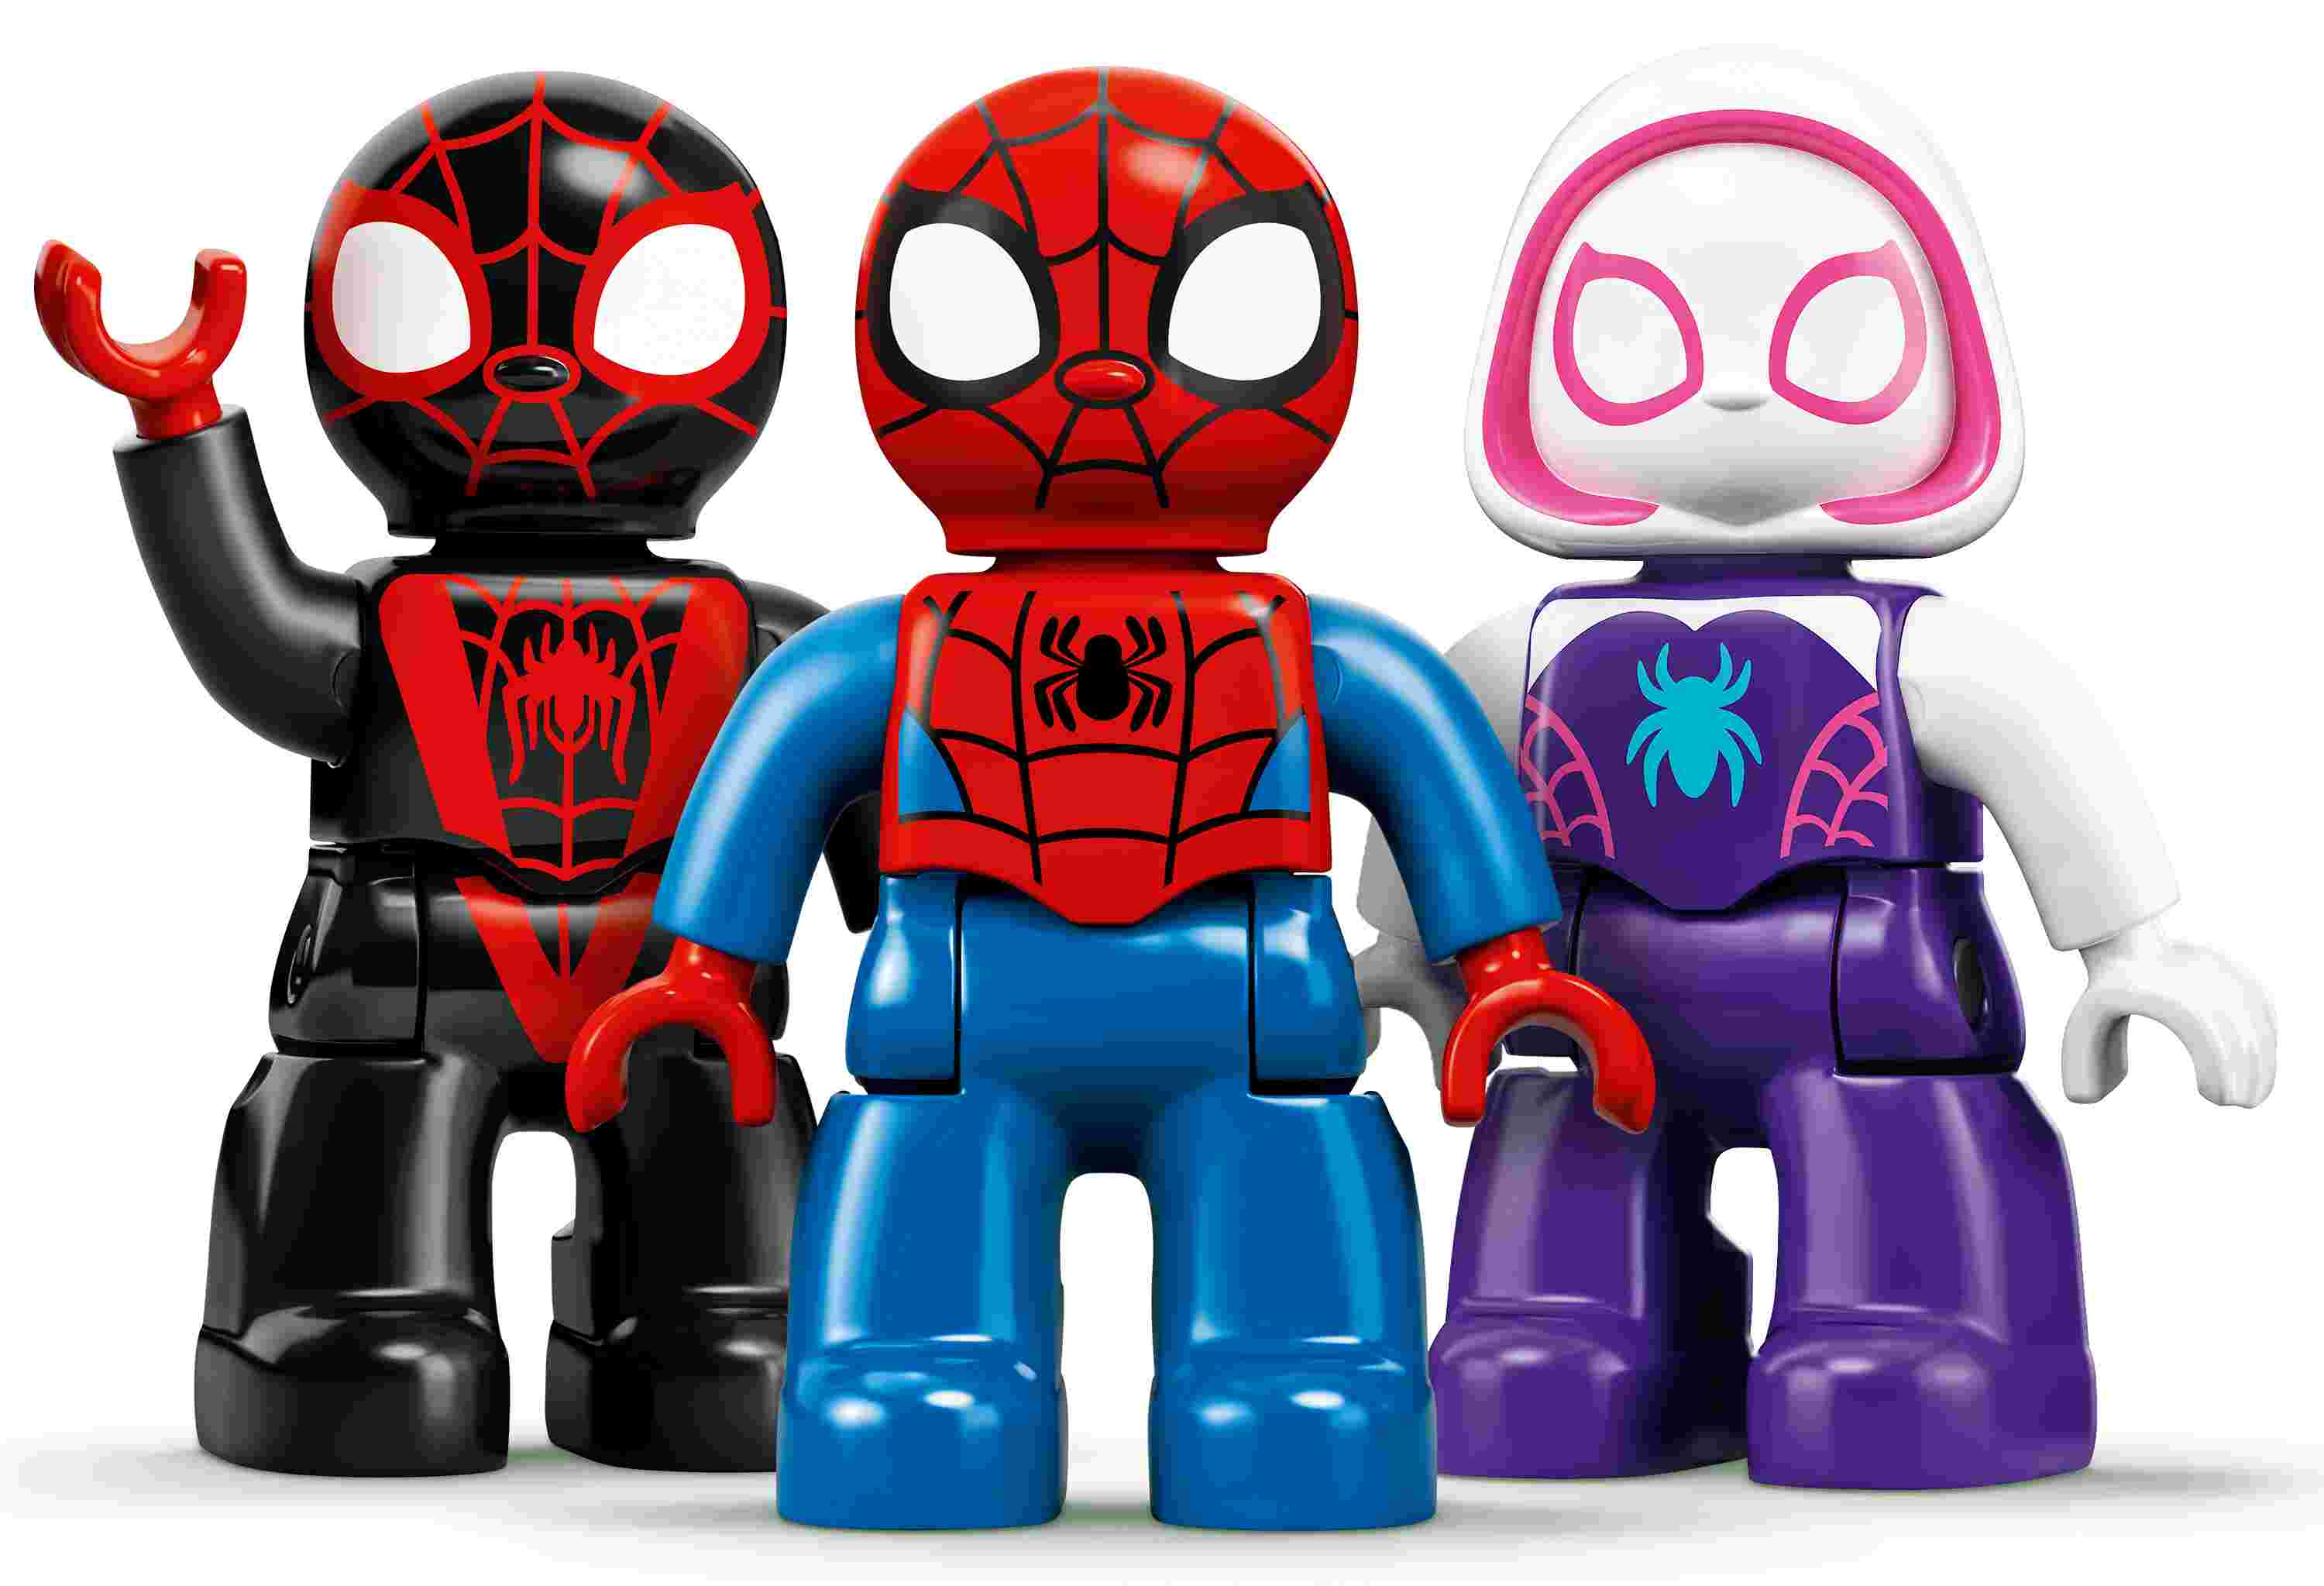 LEGO 10940 DUPLO Marvel Spider-Mans Hauptquartier mit Spider-Man-Figur